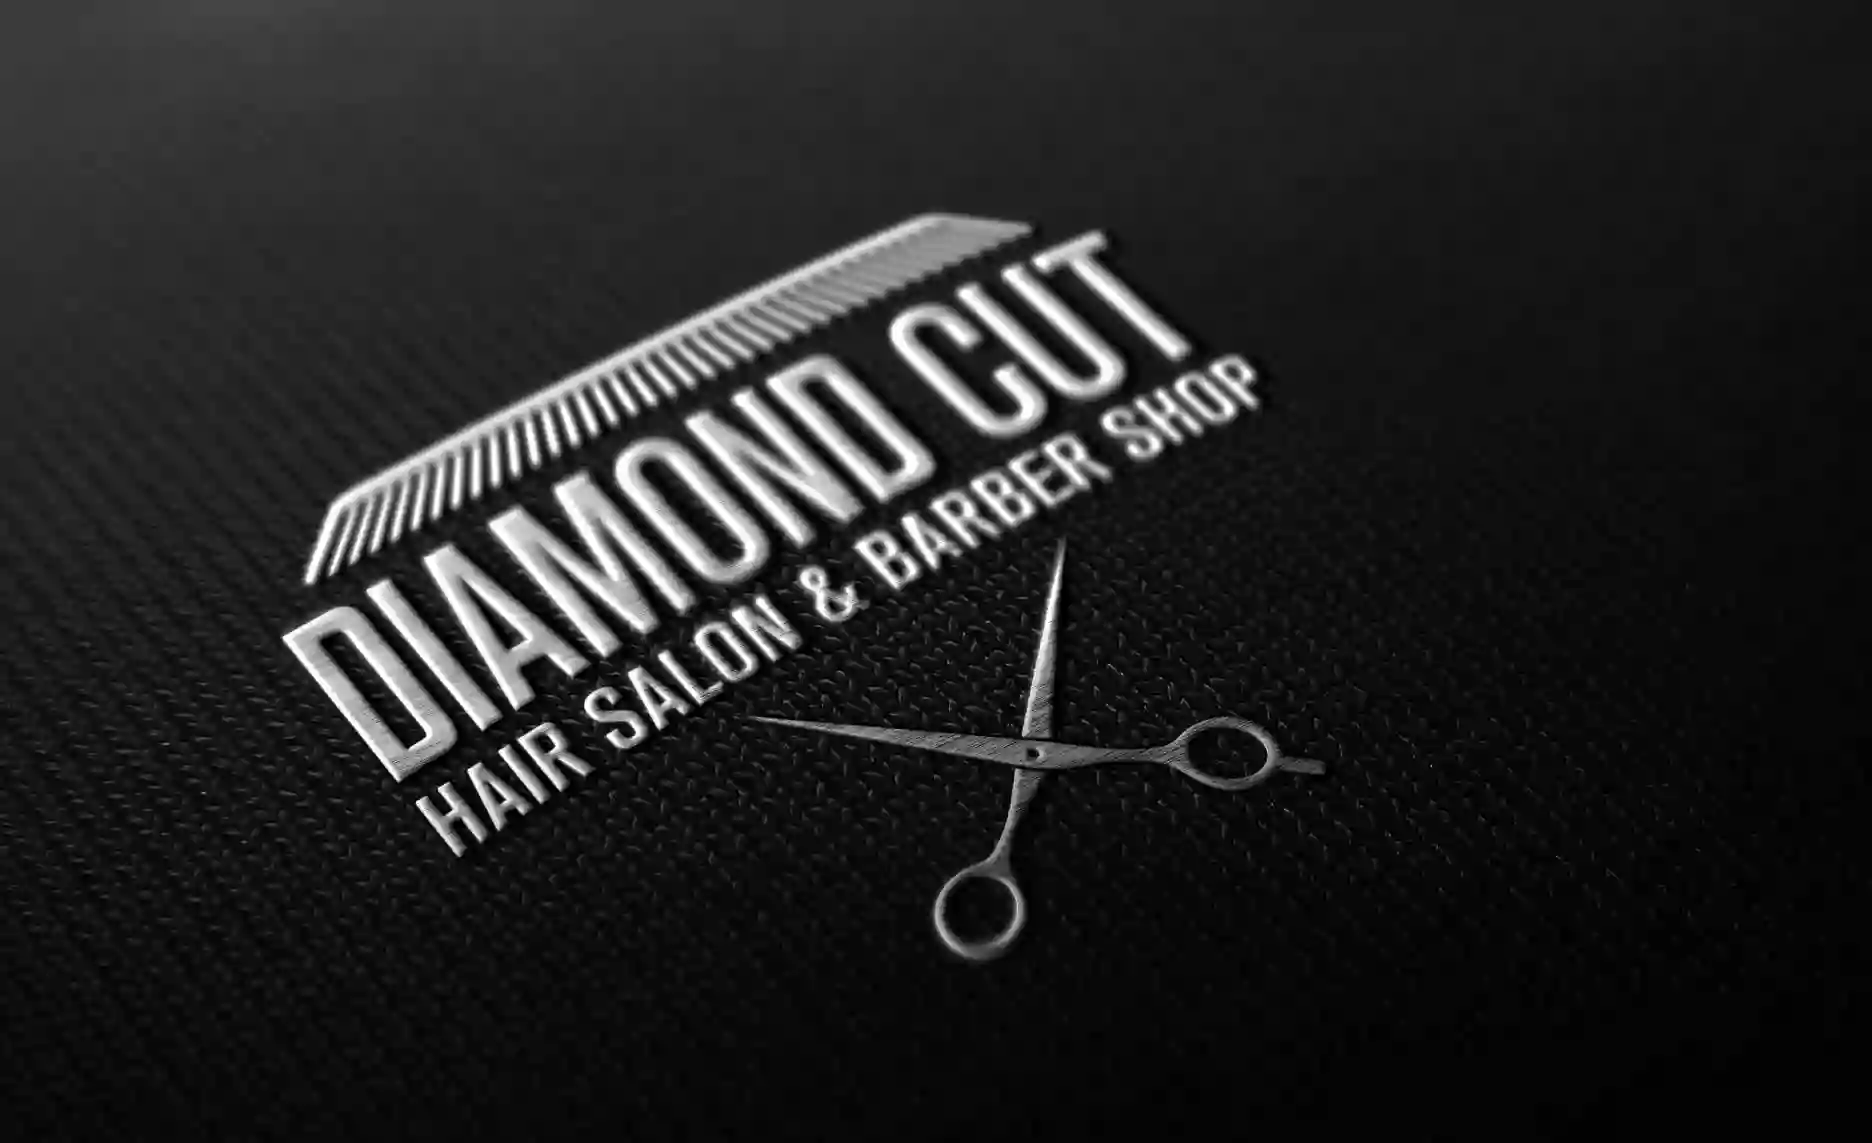 DIAMOND CUT - Friseur in Baunatal / Kassel